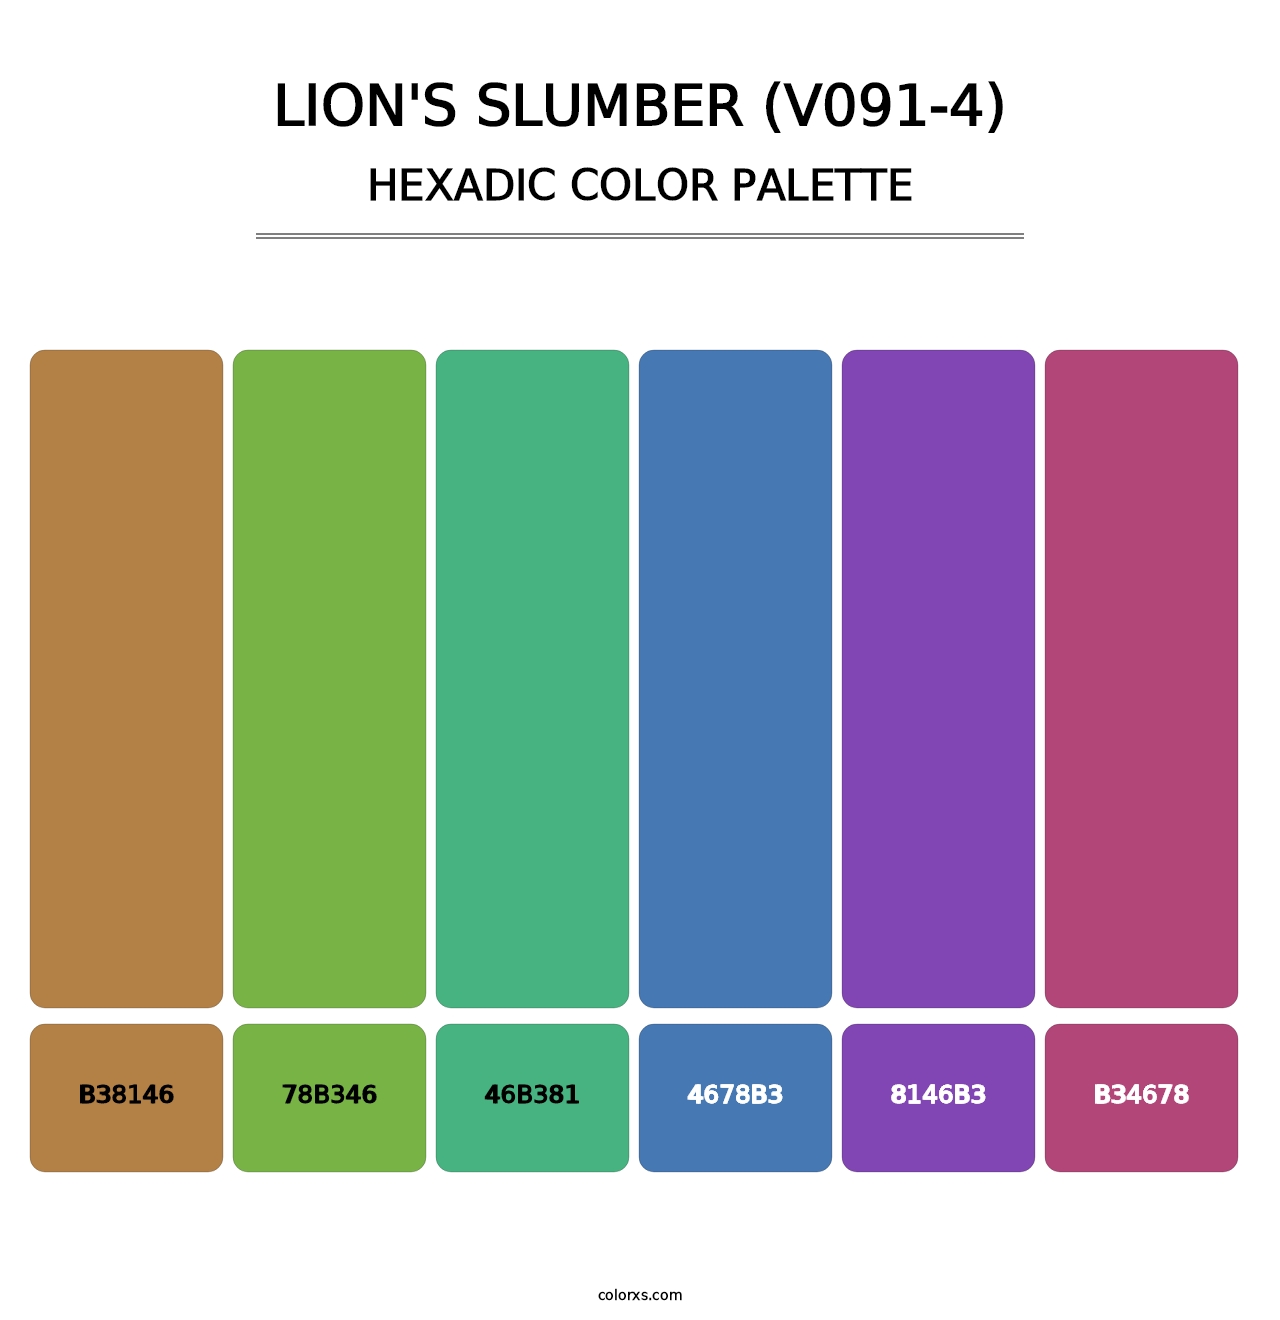 Lion's Slumber (V091-4) - Hexadic Color Palette